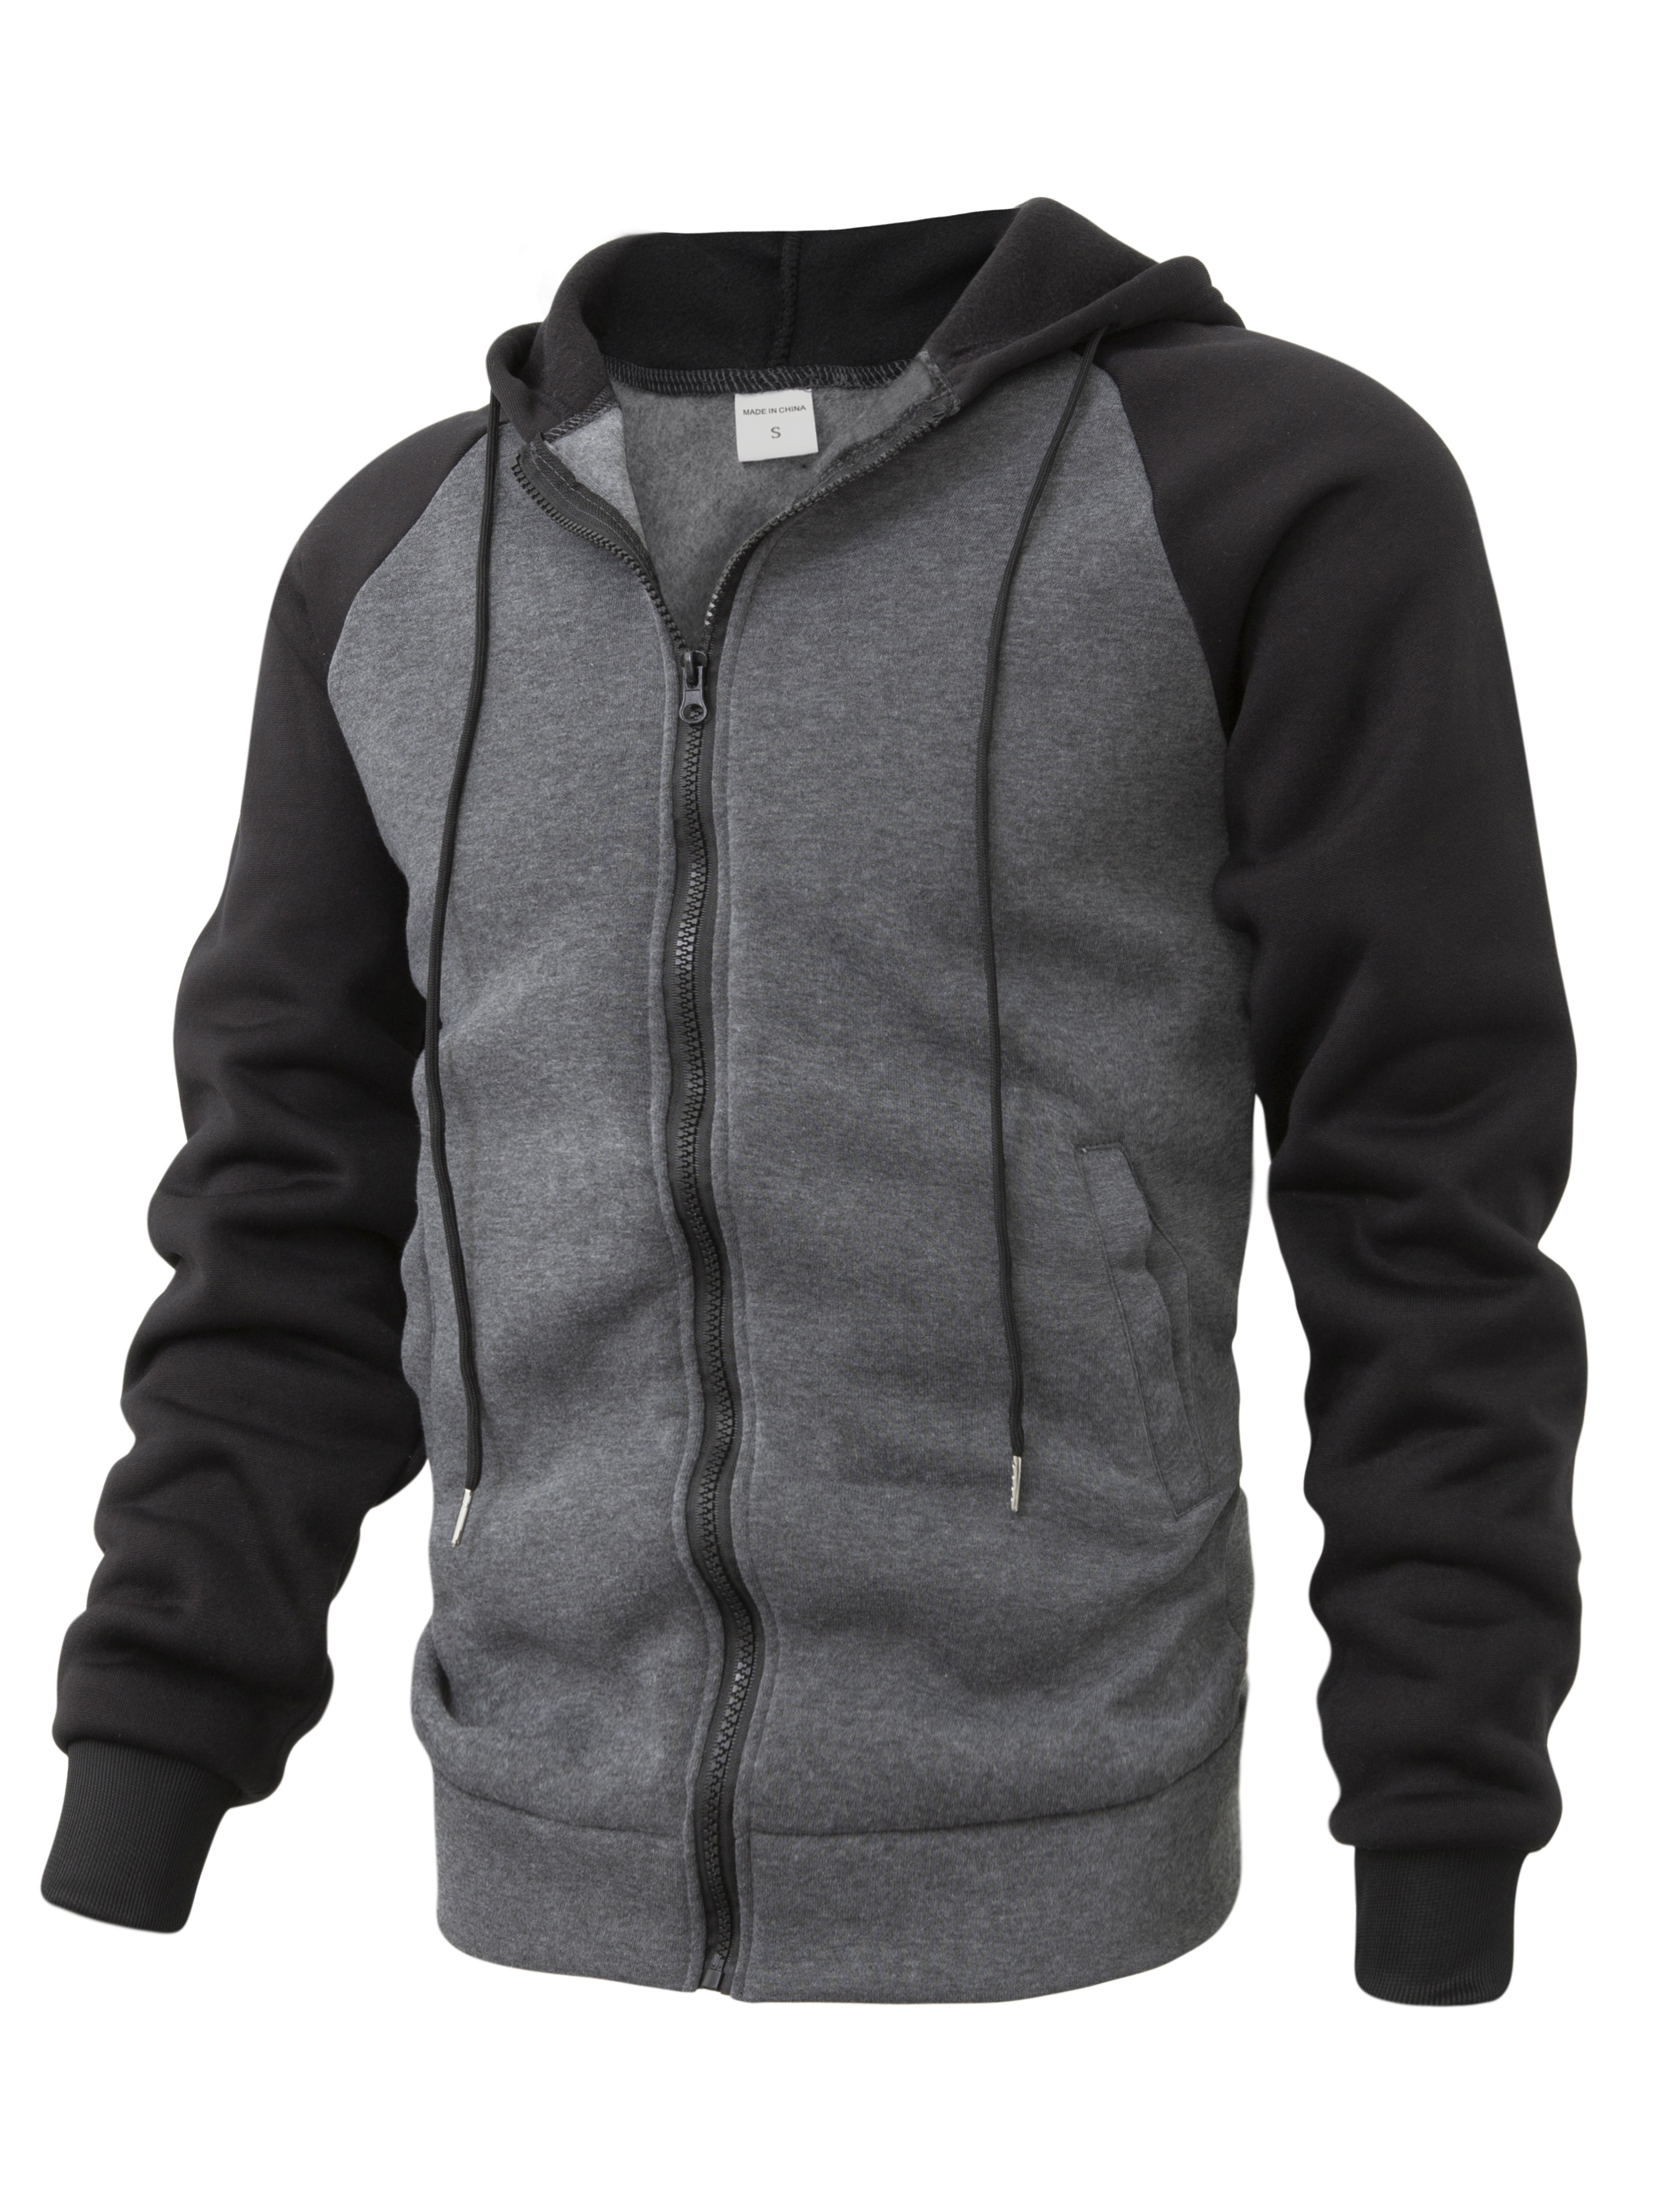 Men's Zip Up Hoodie Jacket Plain Full Zipper Hooded Fleece Sweatshirt  Athletic!